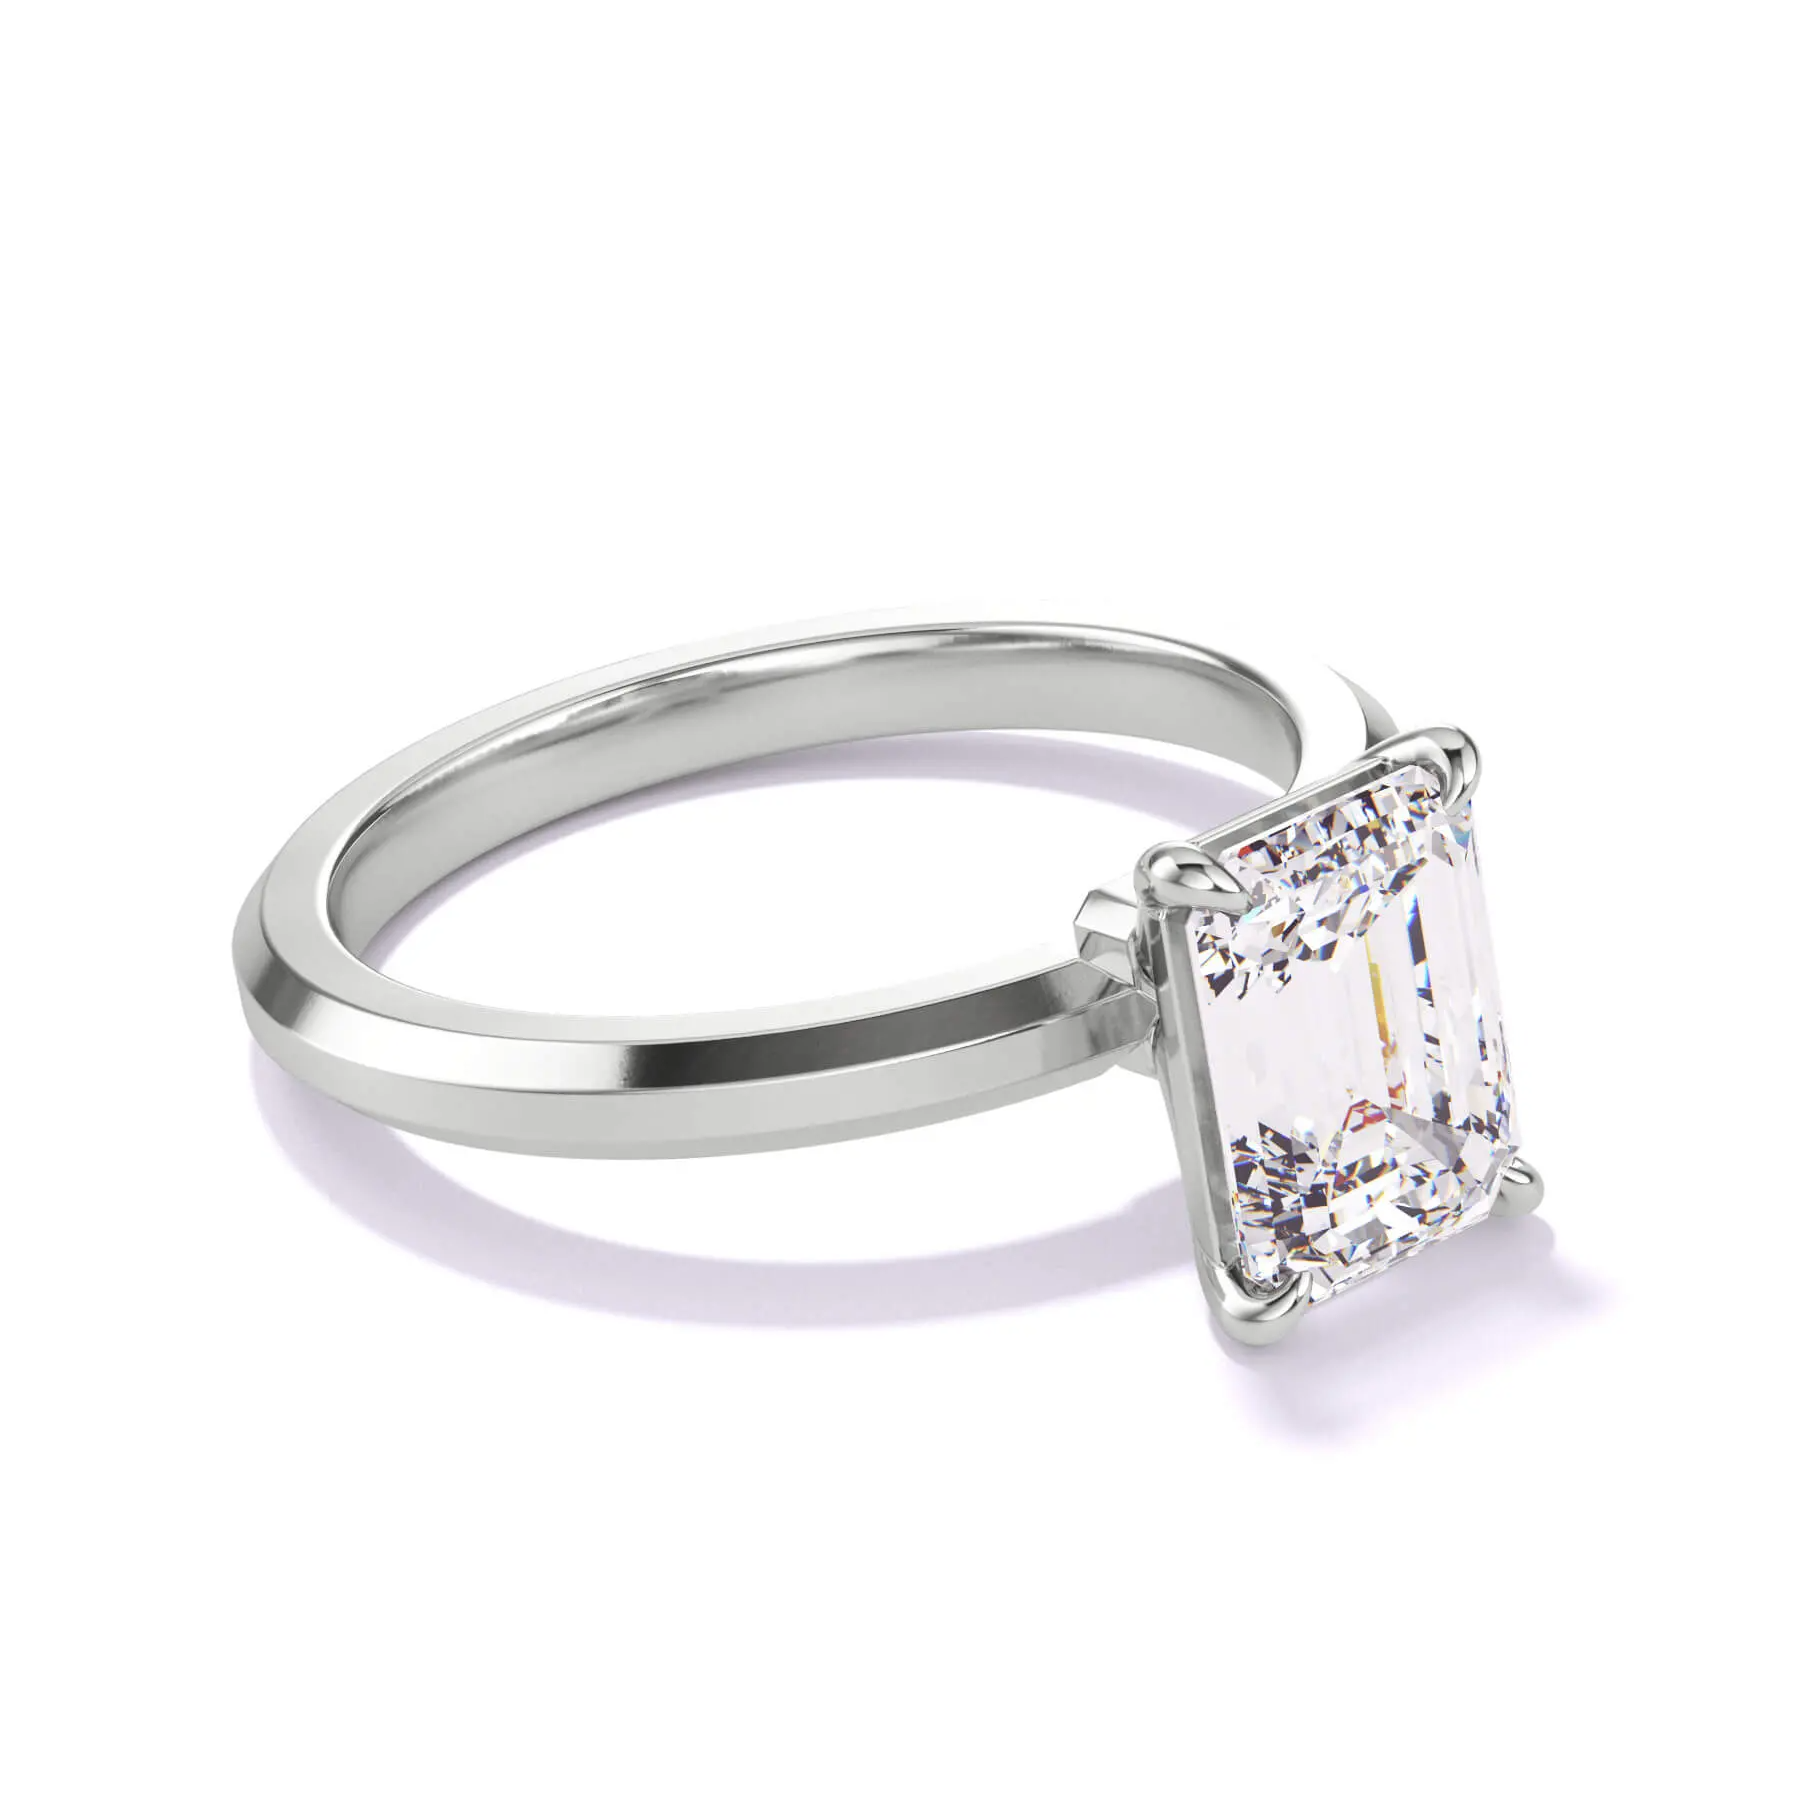 $10,000 diamond engagement ring - emerald cut diamond in platinum 